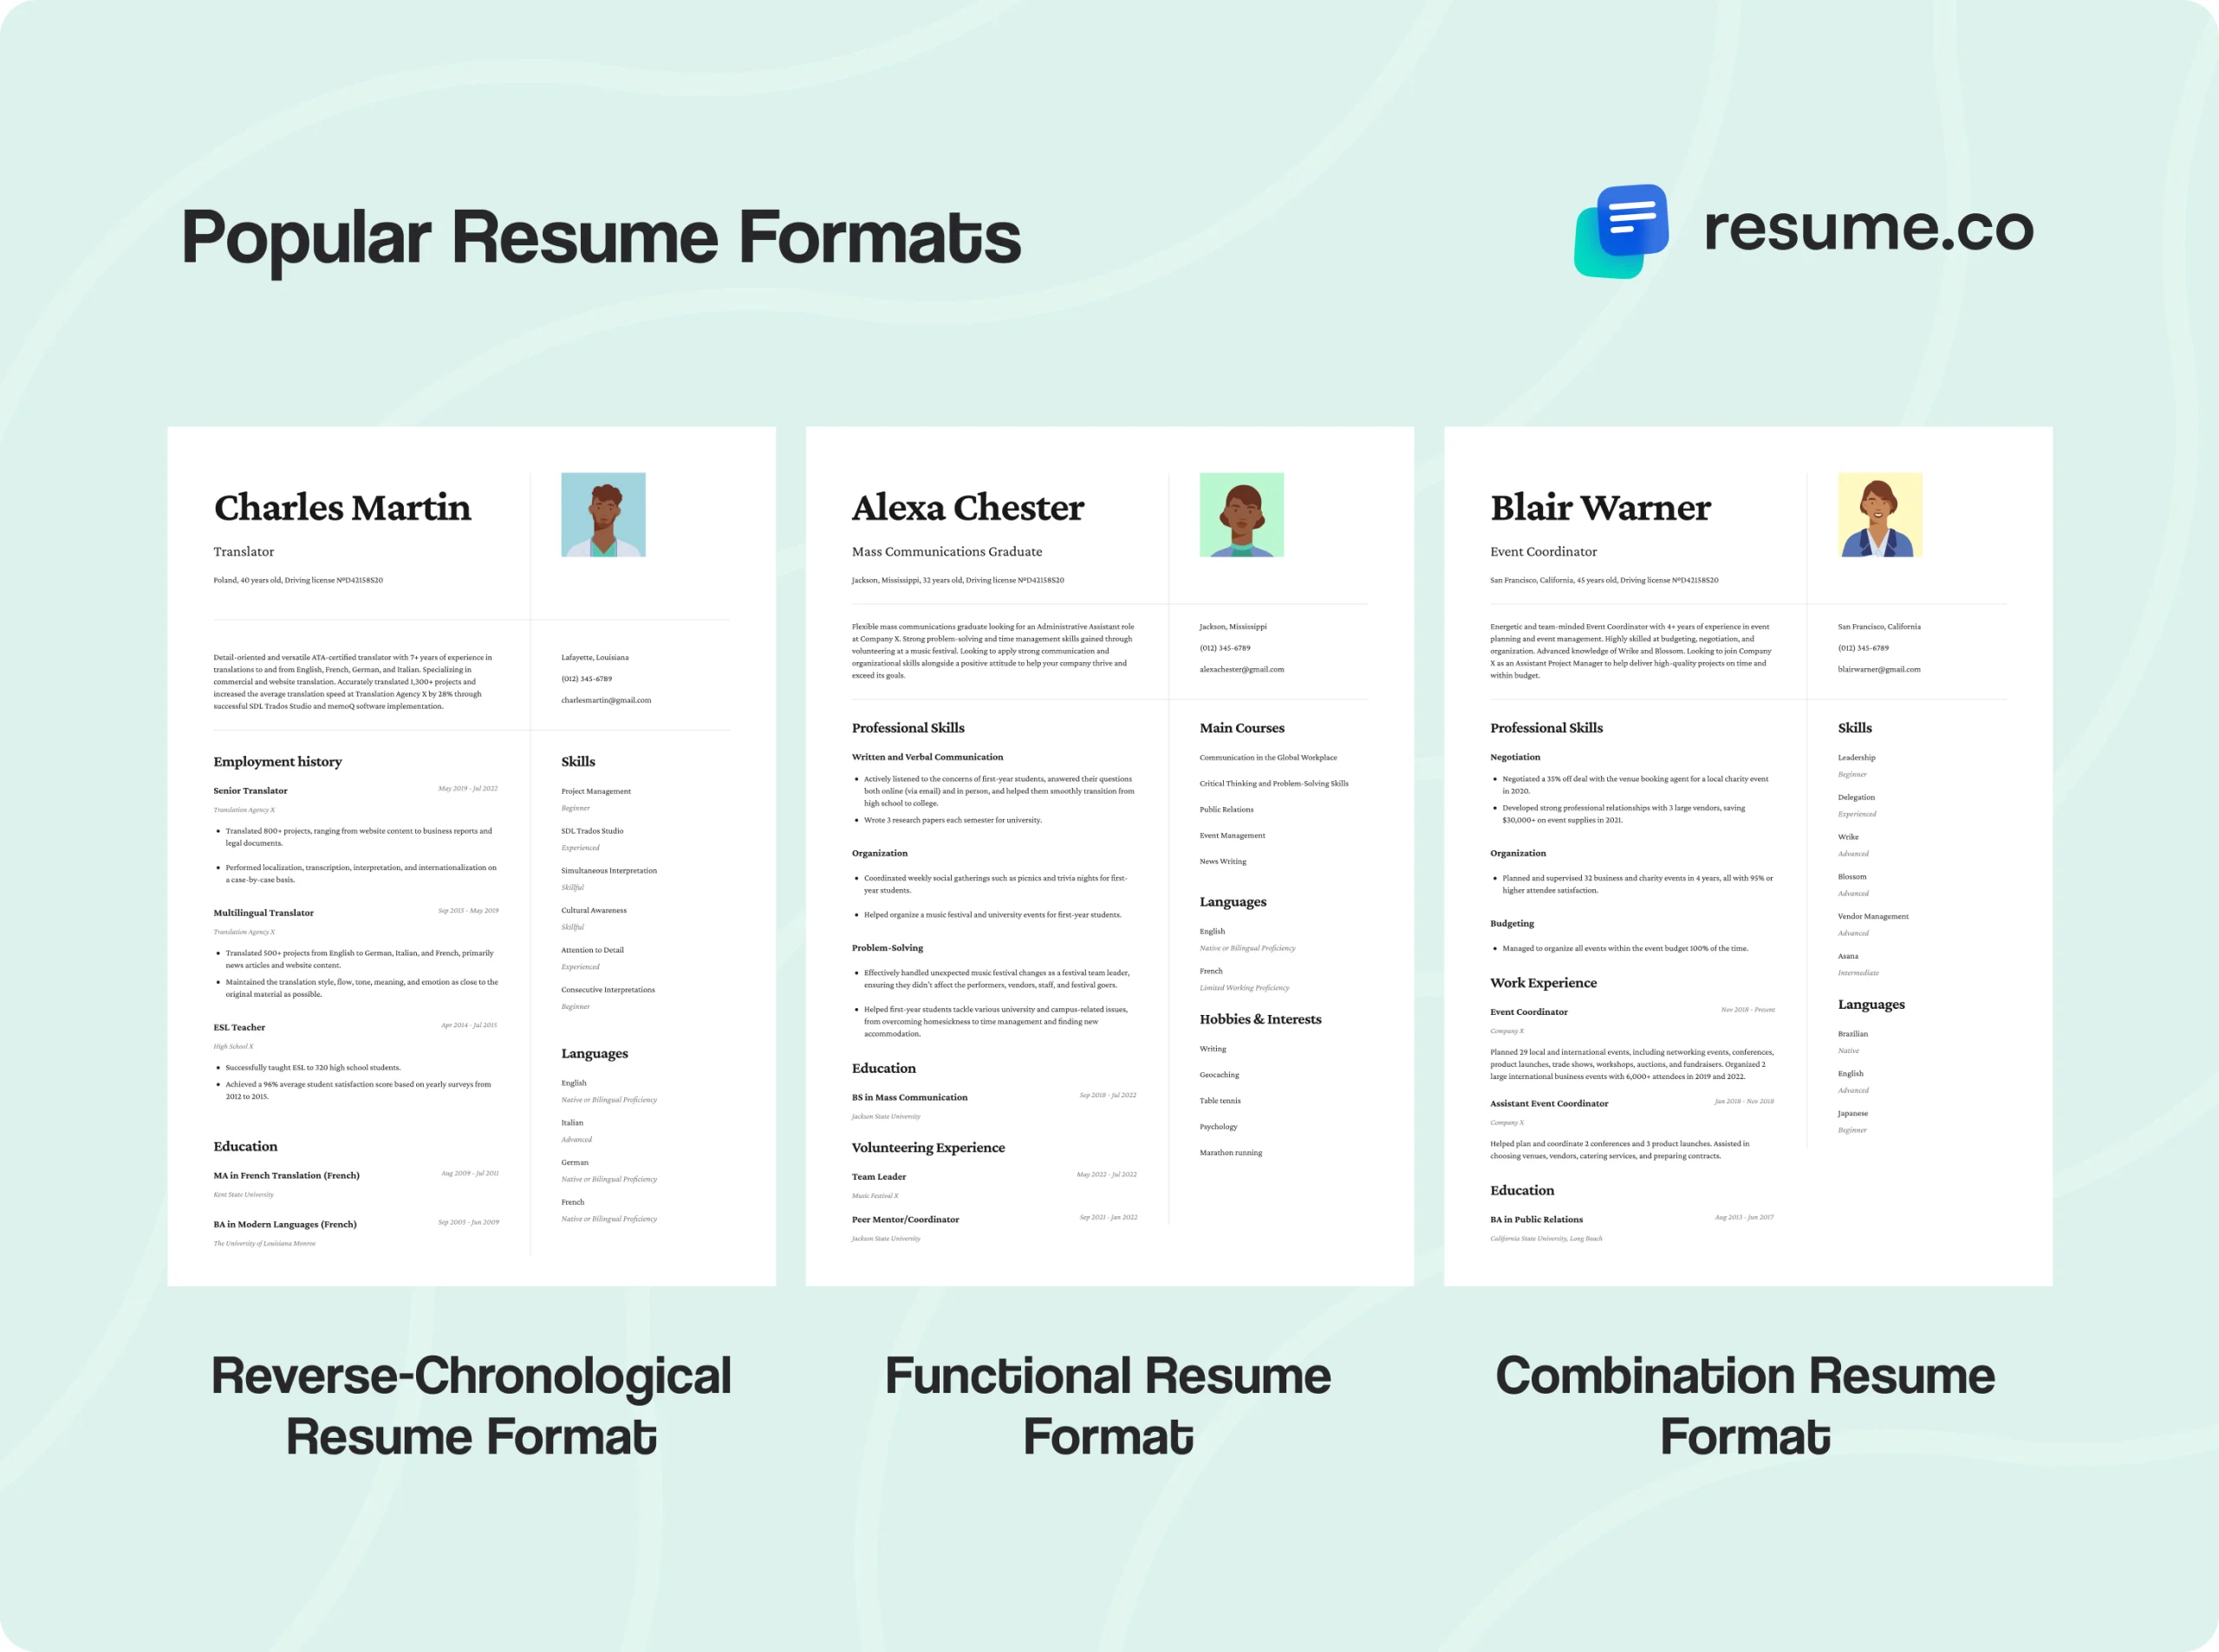 Popular resume formats